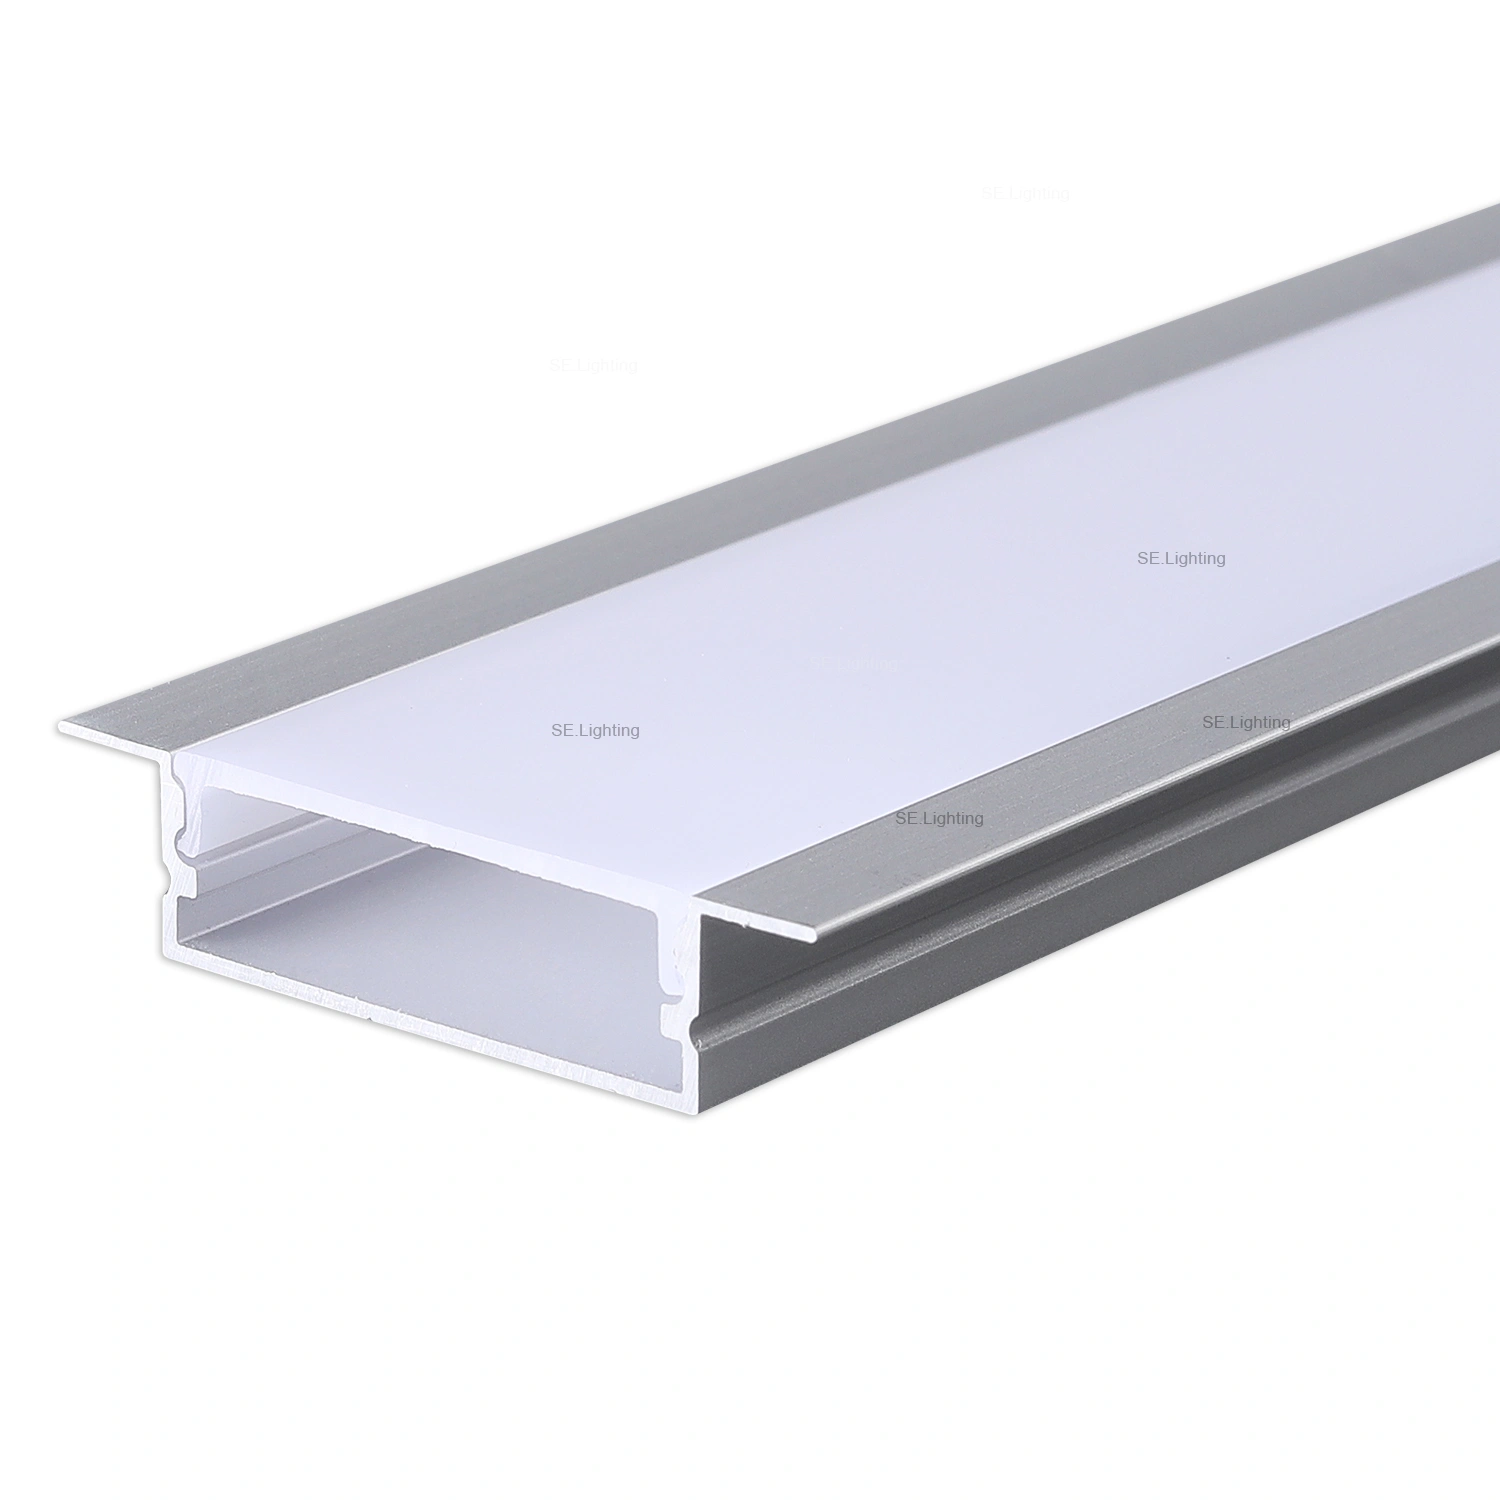 30x10mm LED Profile Aluminum-A